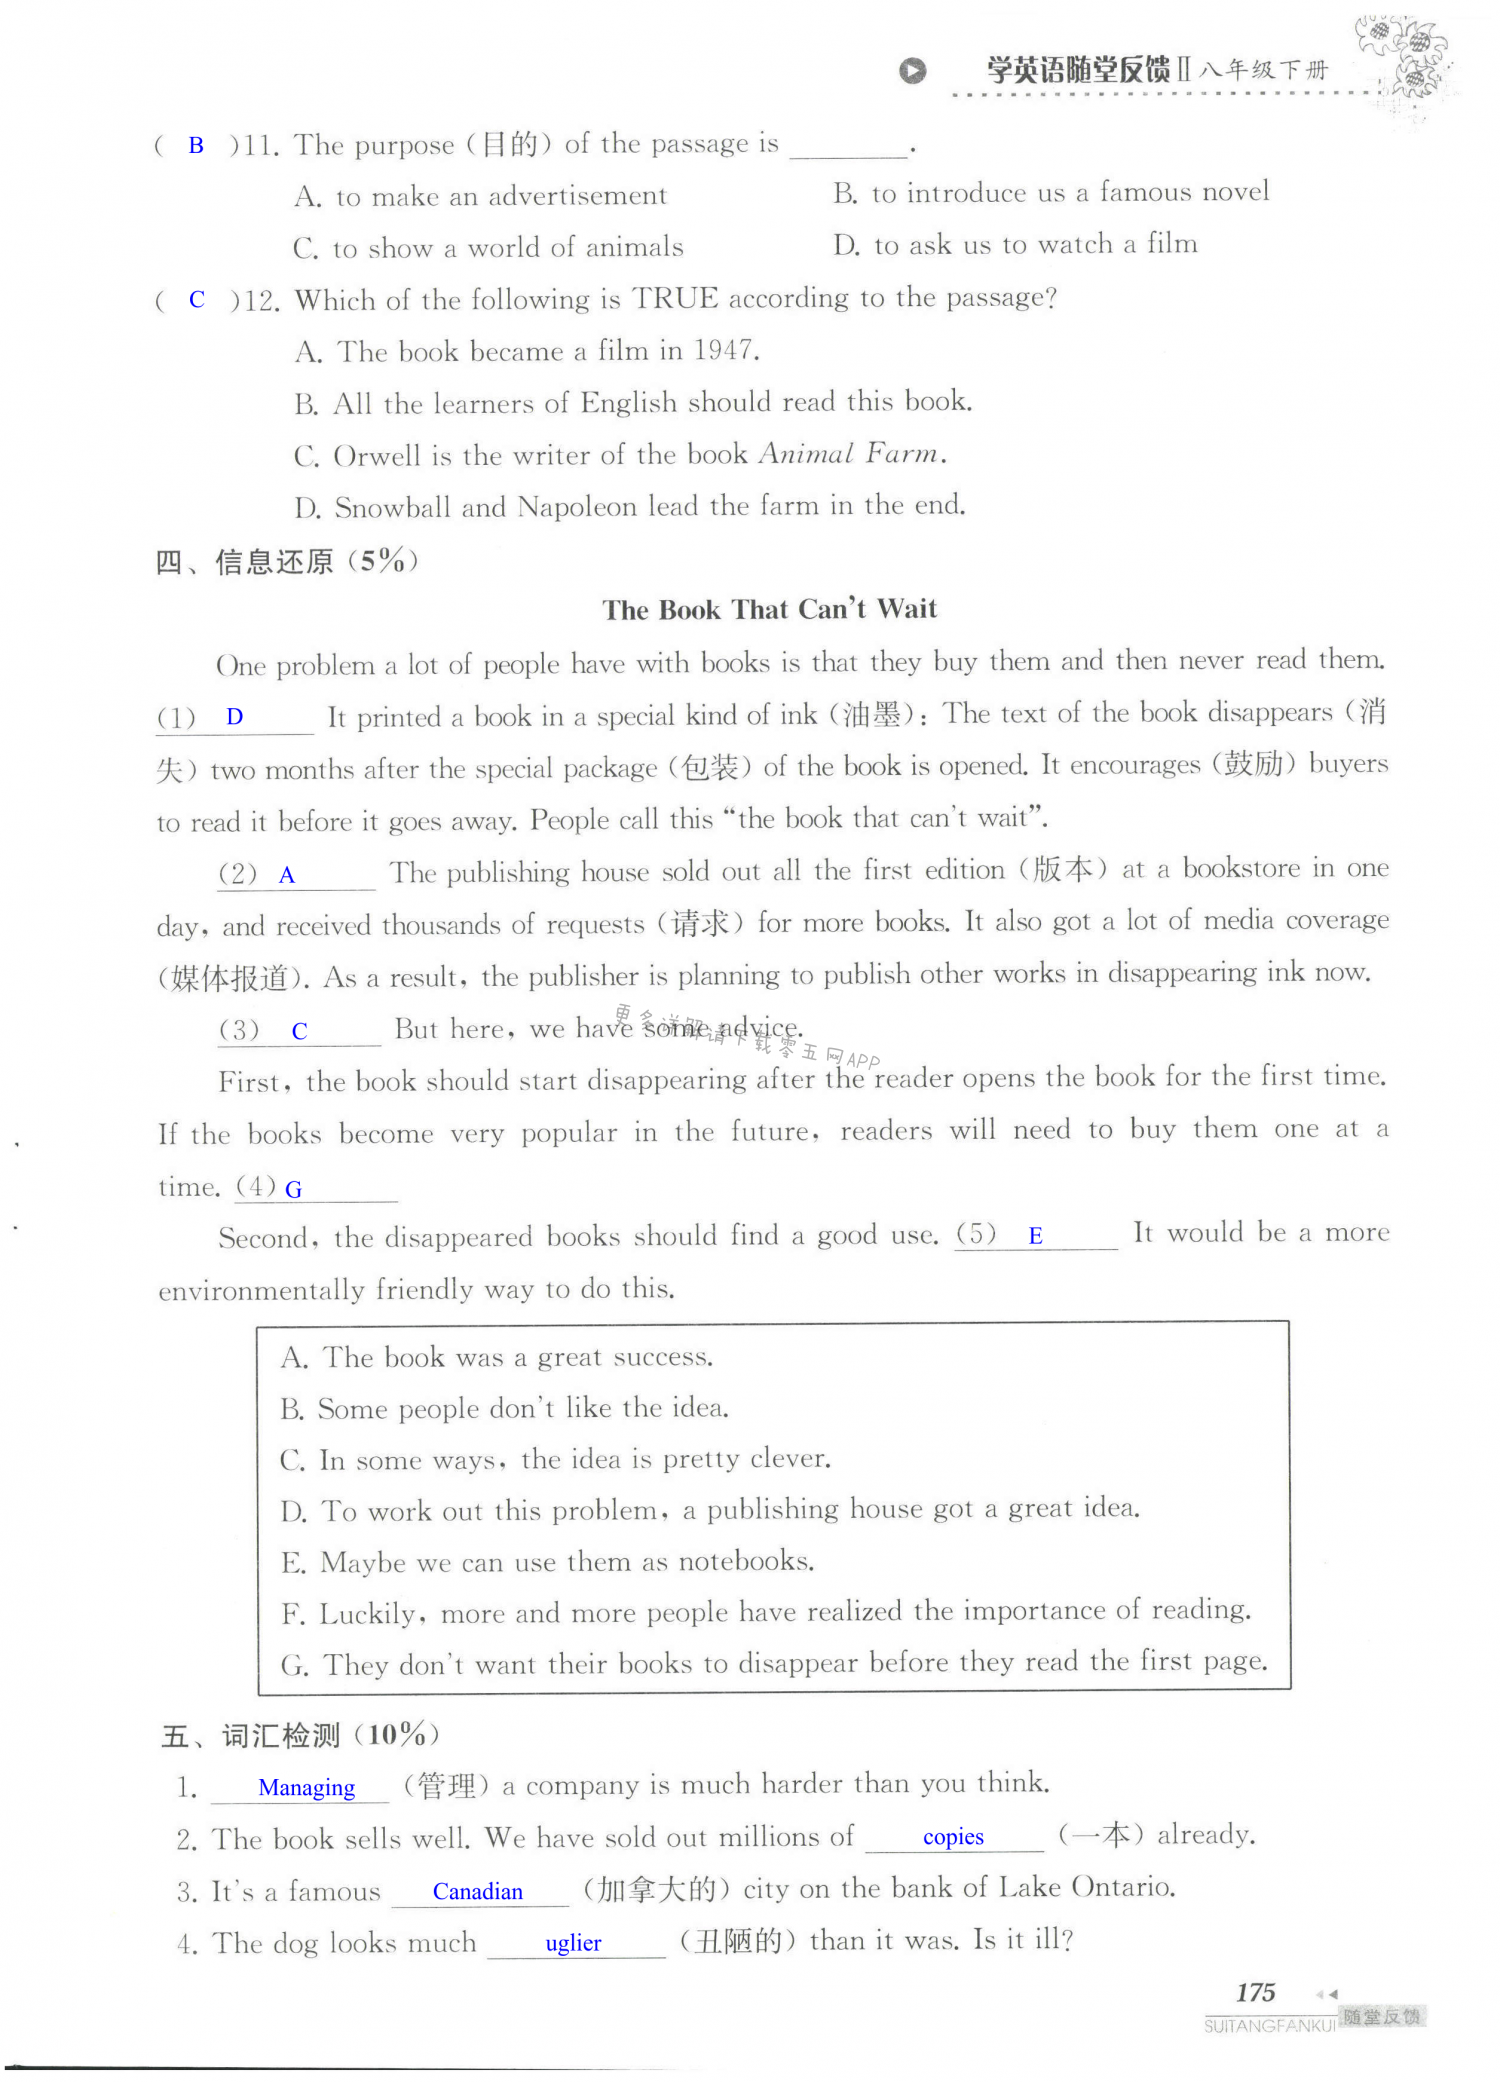 单元综合测试卷 Test for Unit 4 of 8B - 第175页